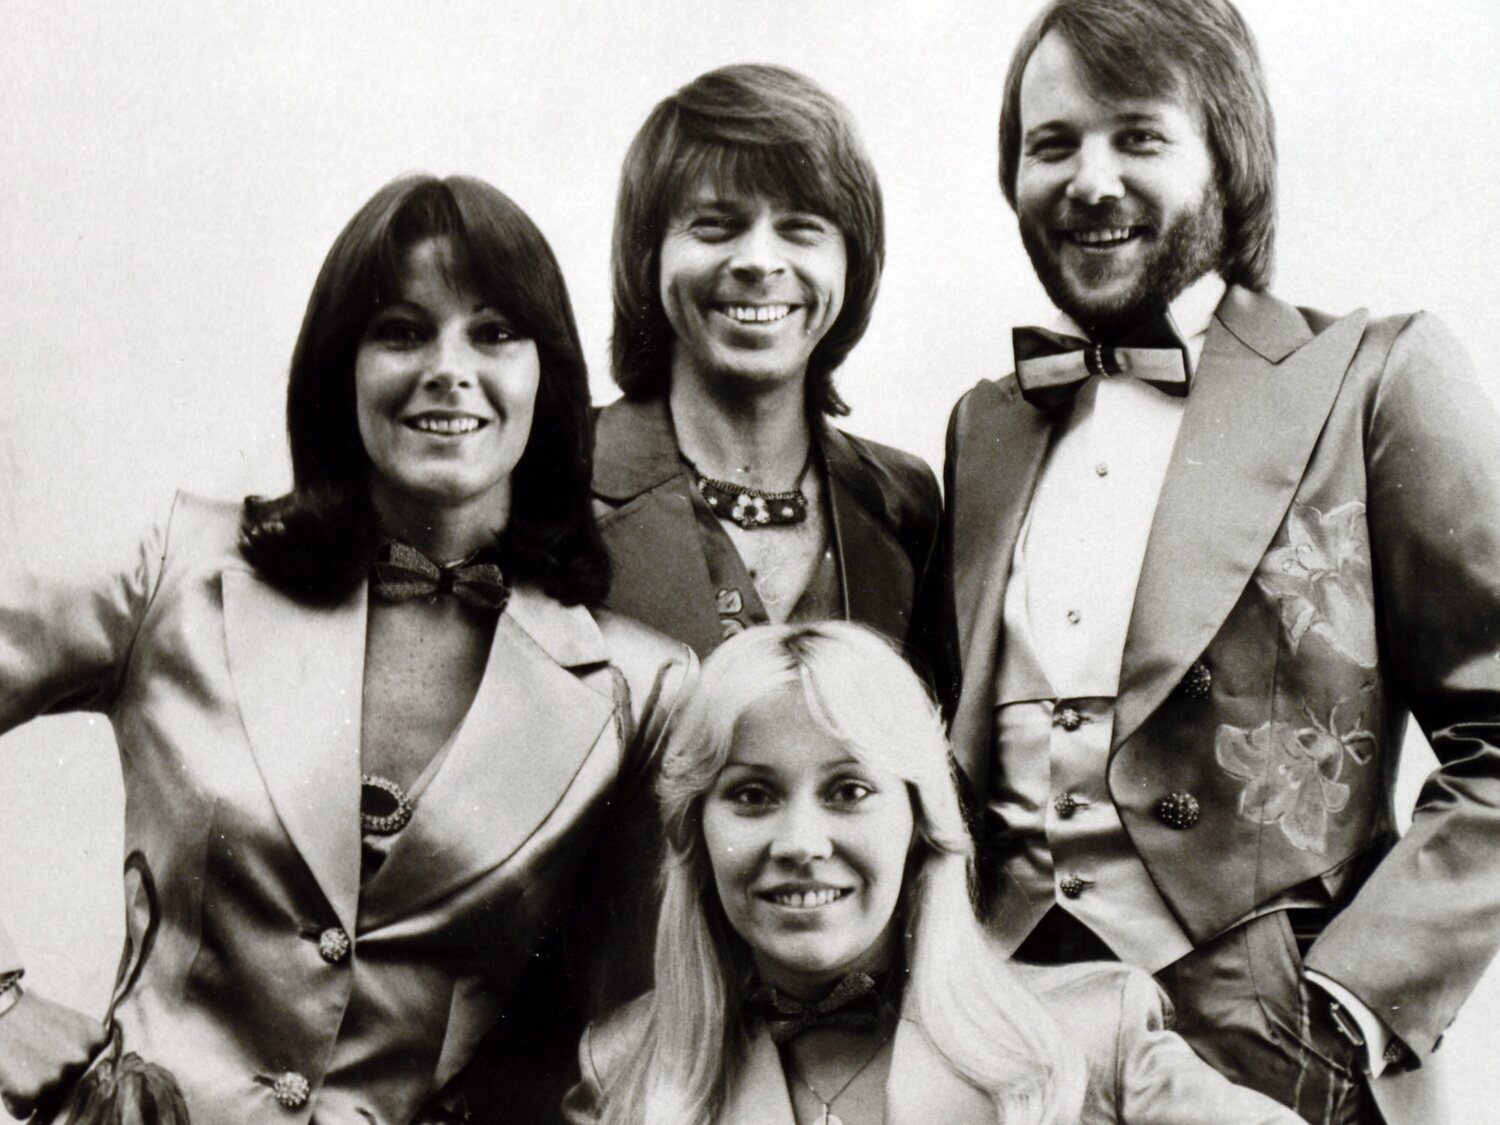 ABBA: Así nació el fenómeno musical sueco más exitoso de todos los tiempos